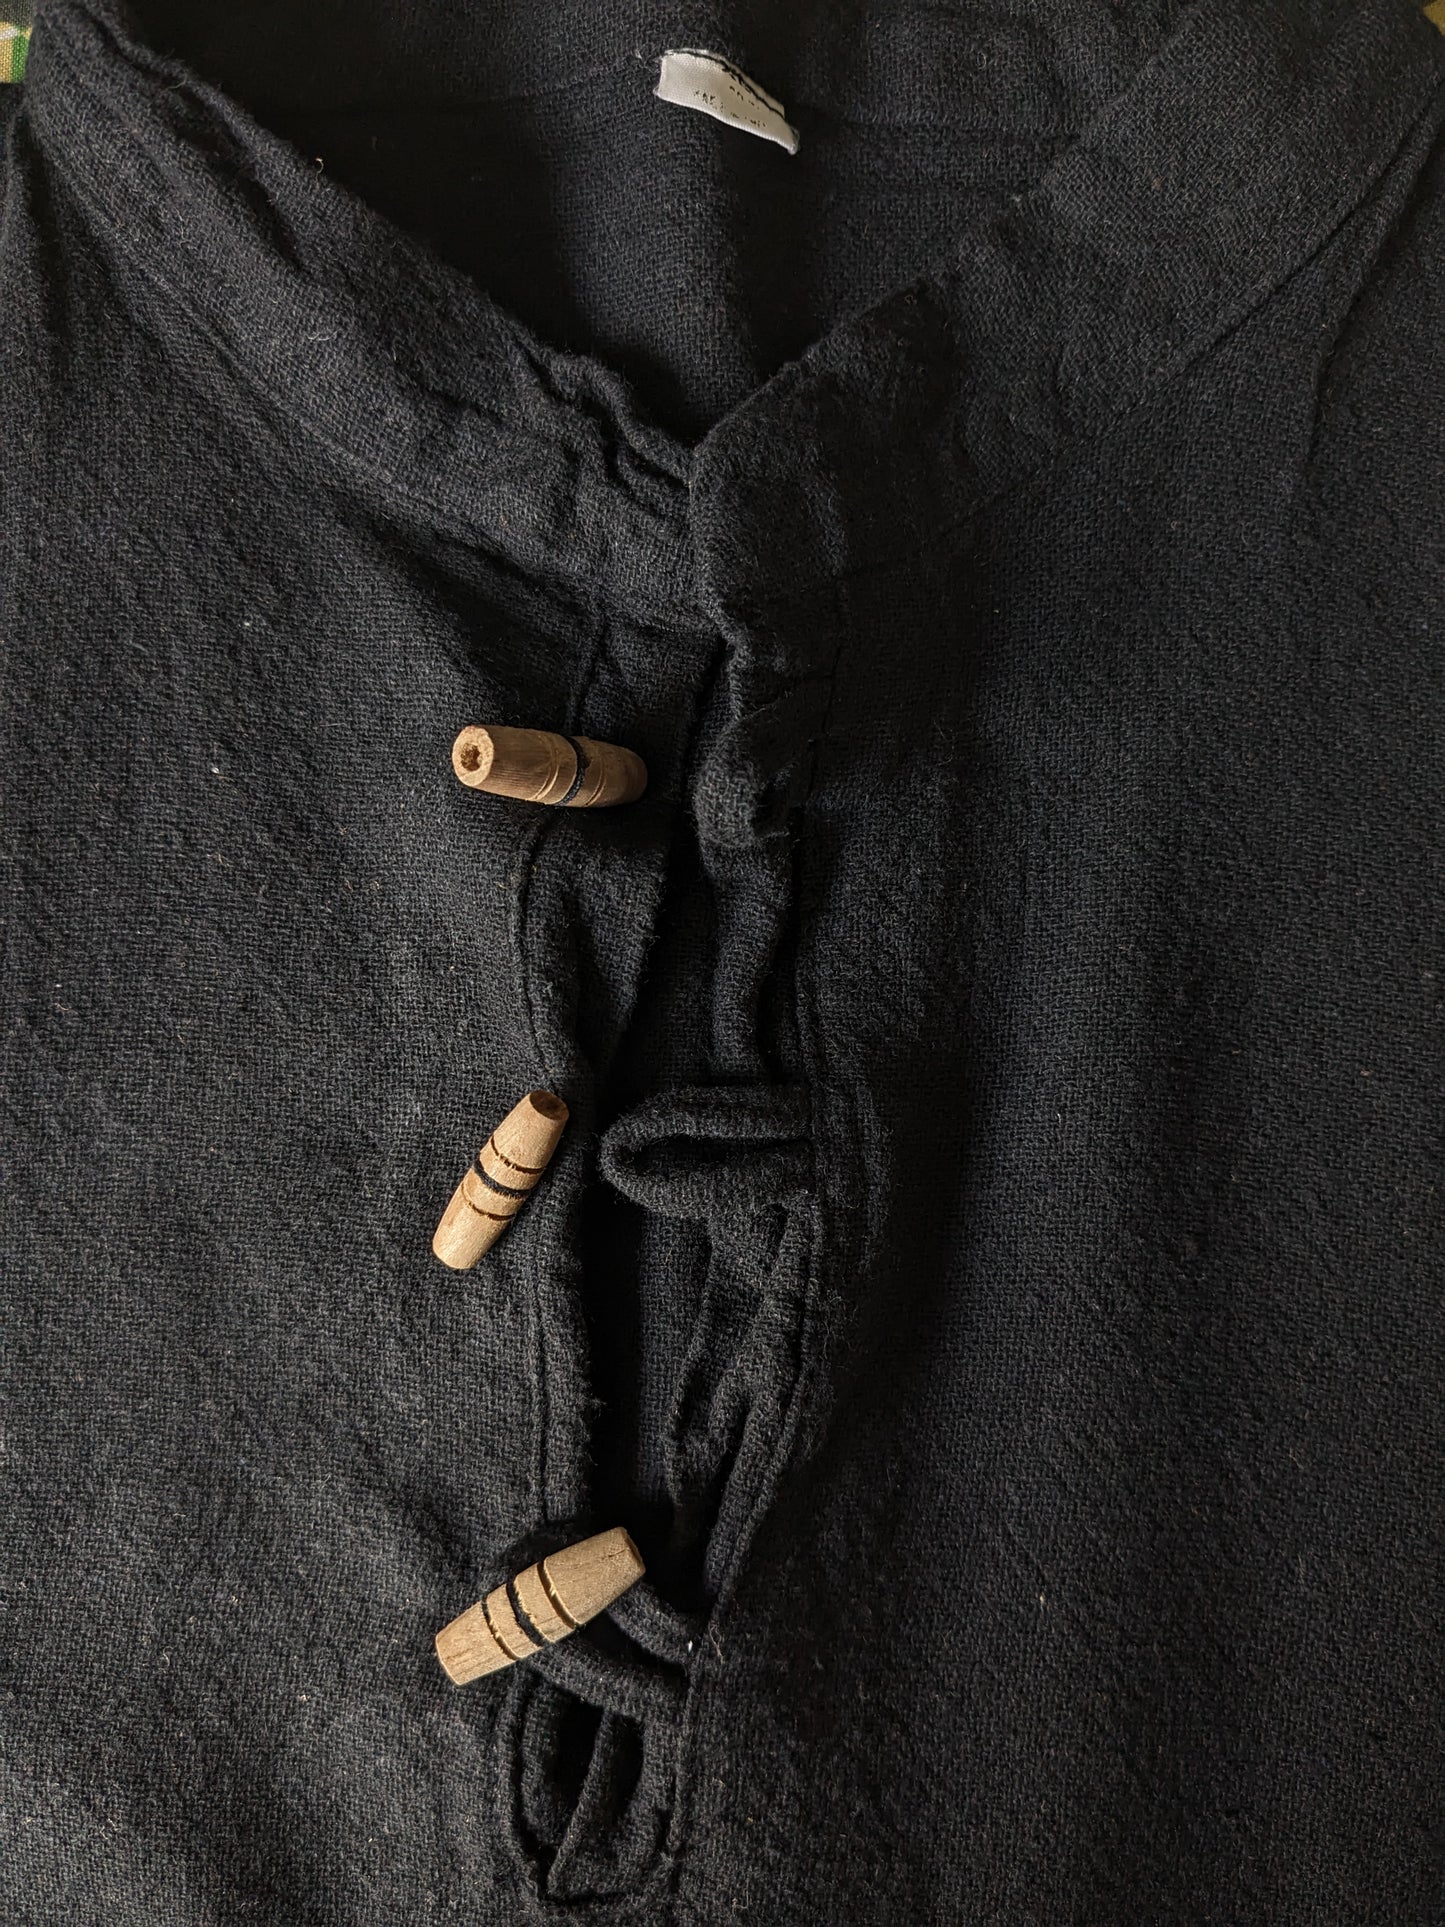 Chemise de chemise vintage avec 1 sac et mao / agriculteurs / collier droit. Couleur noire. Taille M.